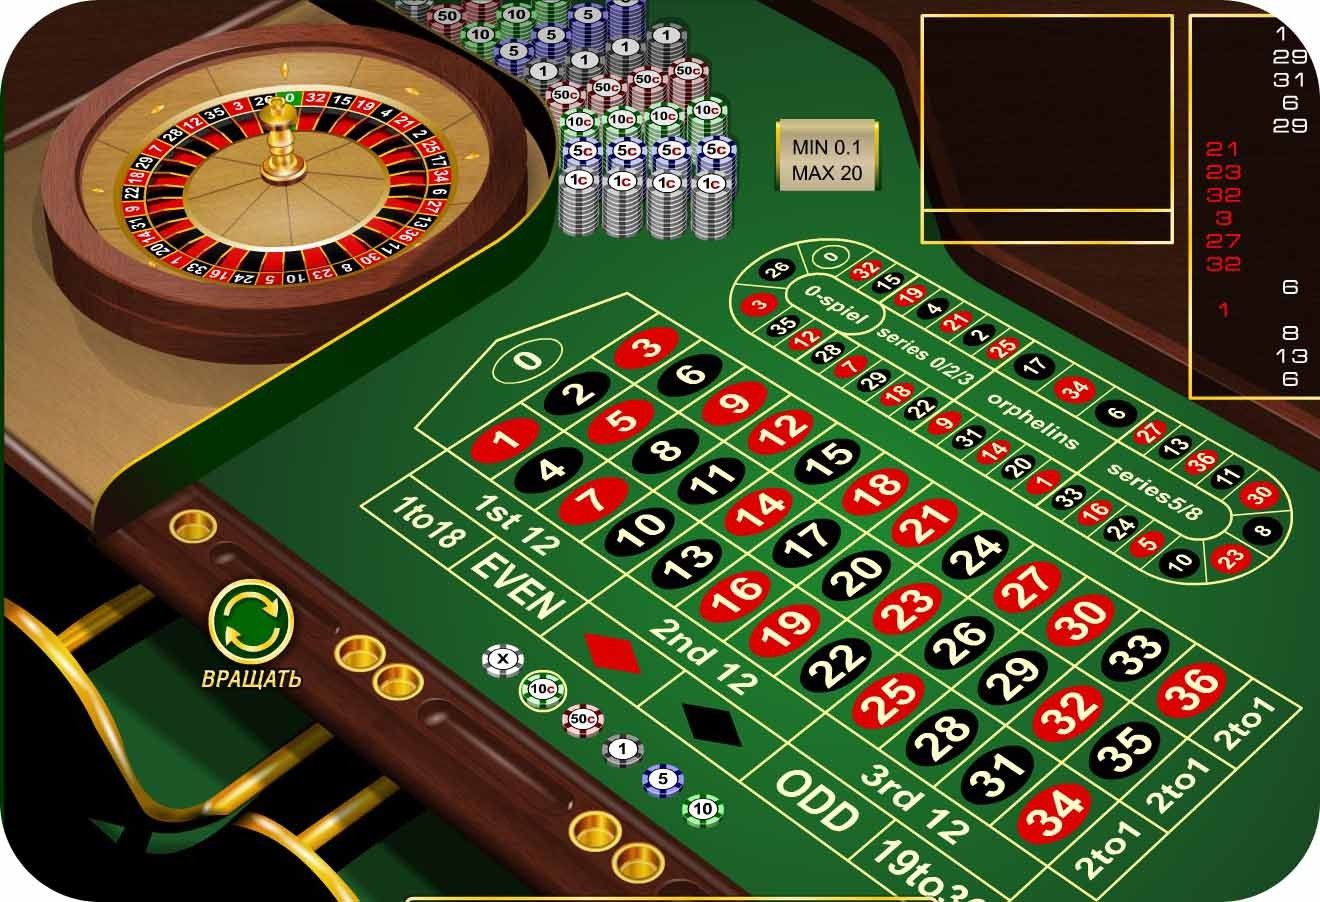 Как правильно играть в онлайн казино в рулетку мостбет вход прямо сейчас mostbet wc5 xyz